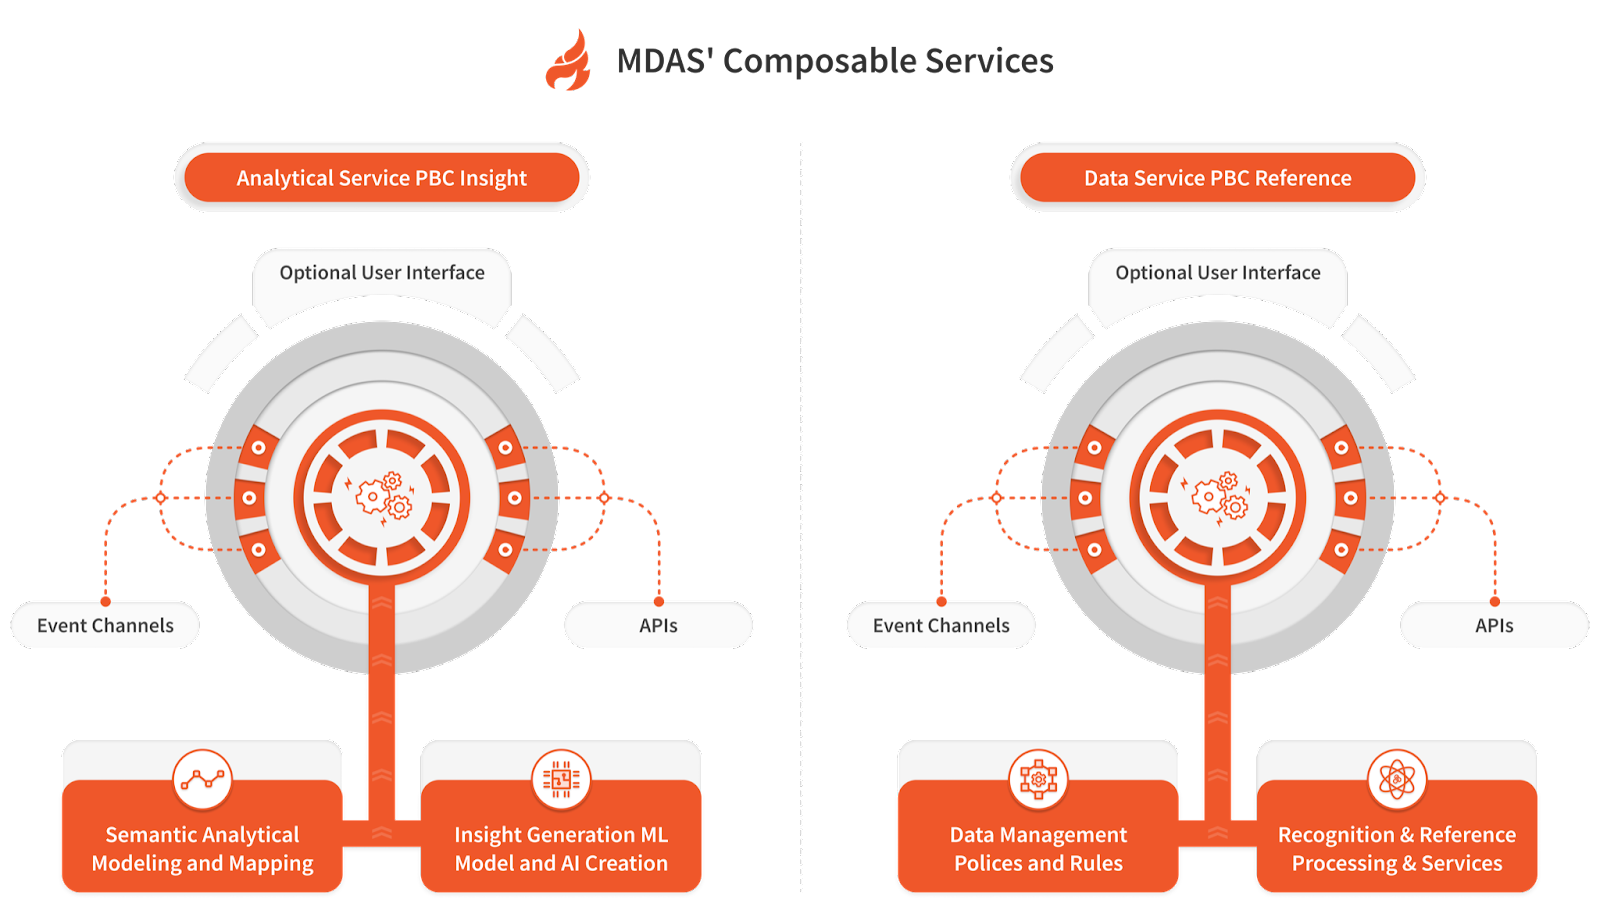 MDAS Composable Services